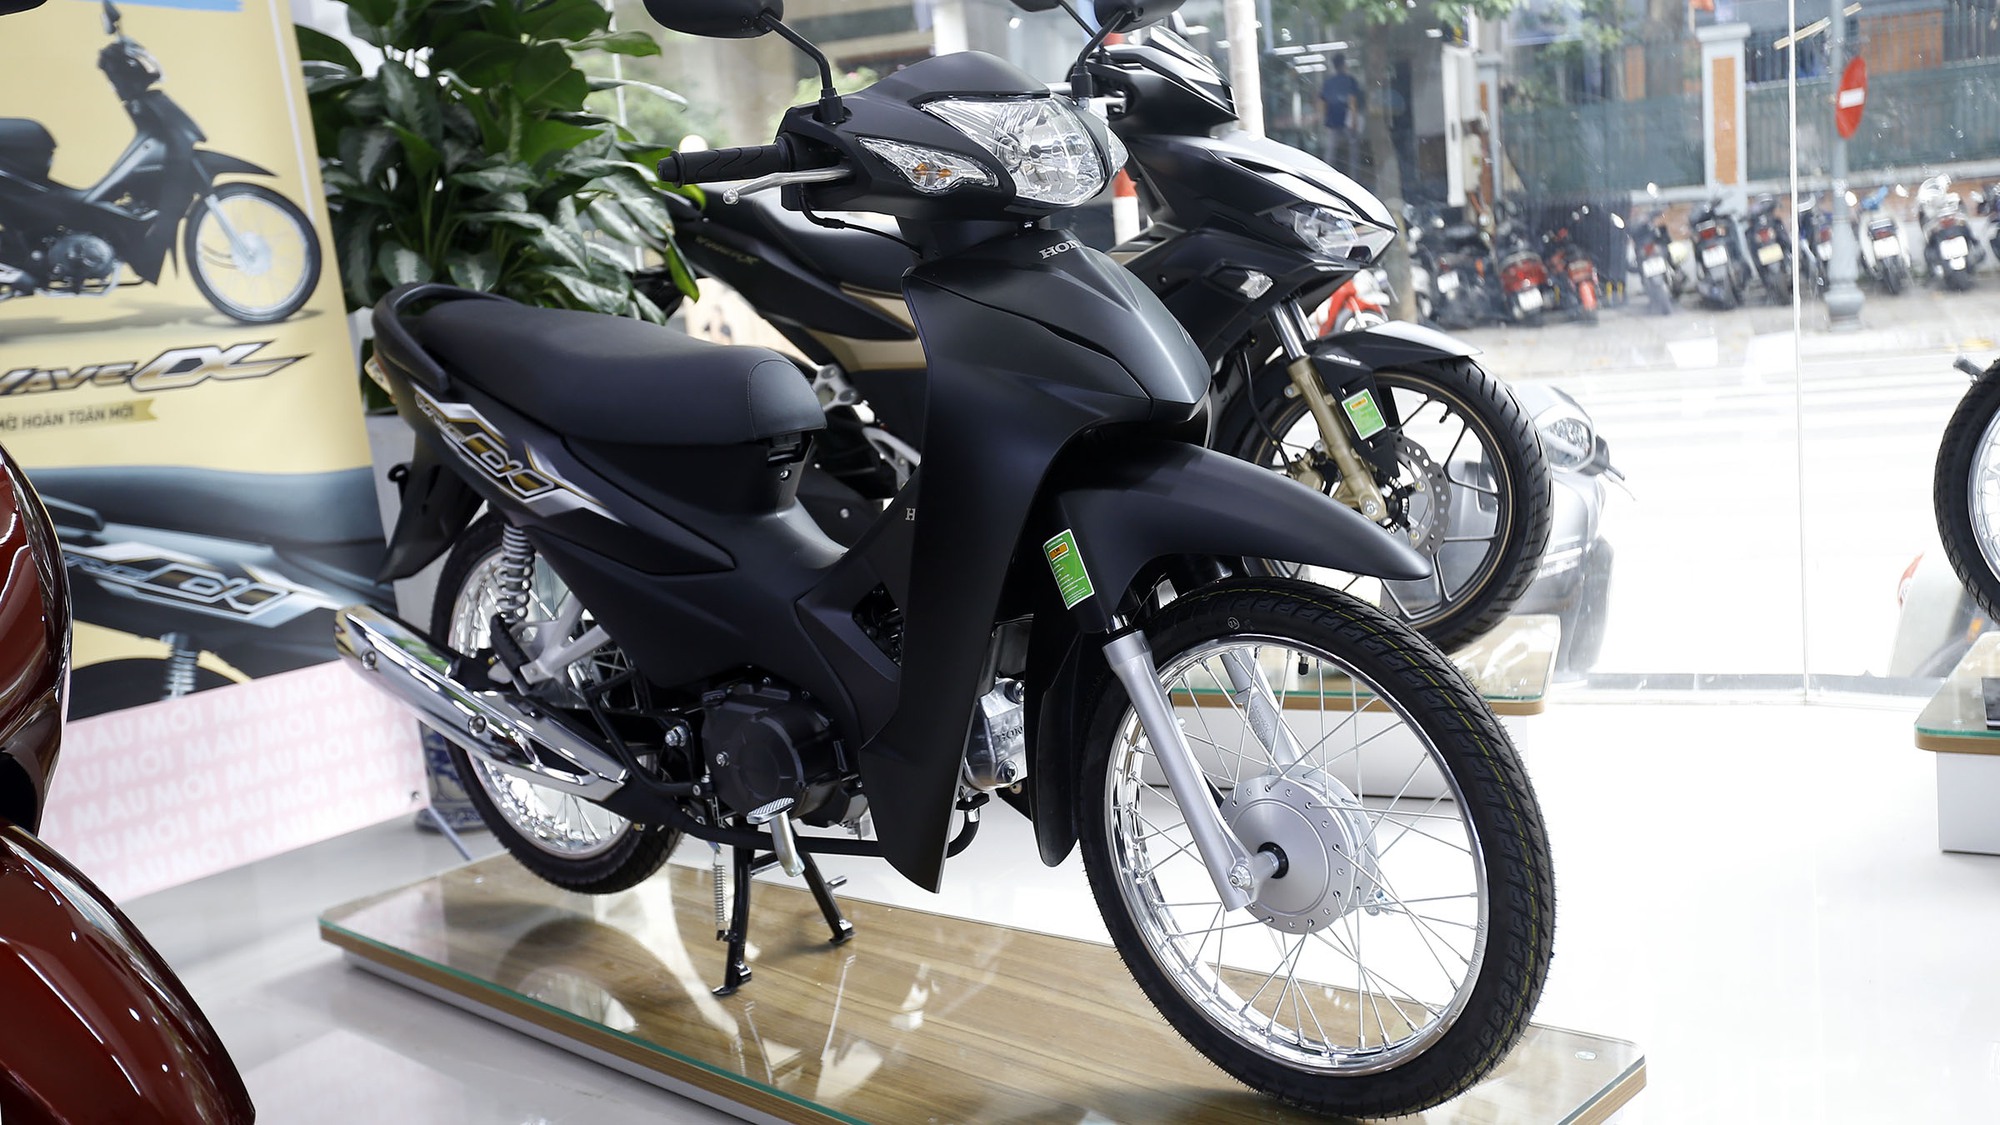 Những mẫu xe máy rẻ nhất Việt Nam  baoninhbinhorgvn